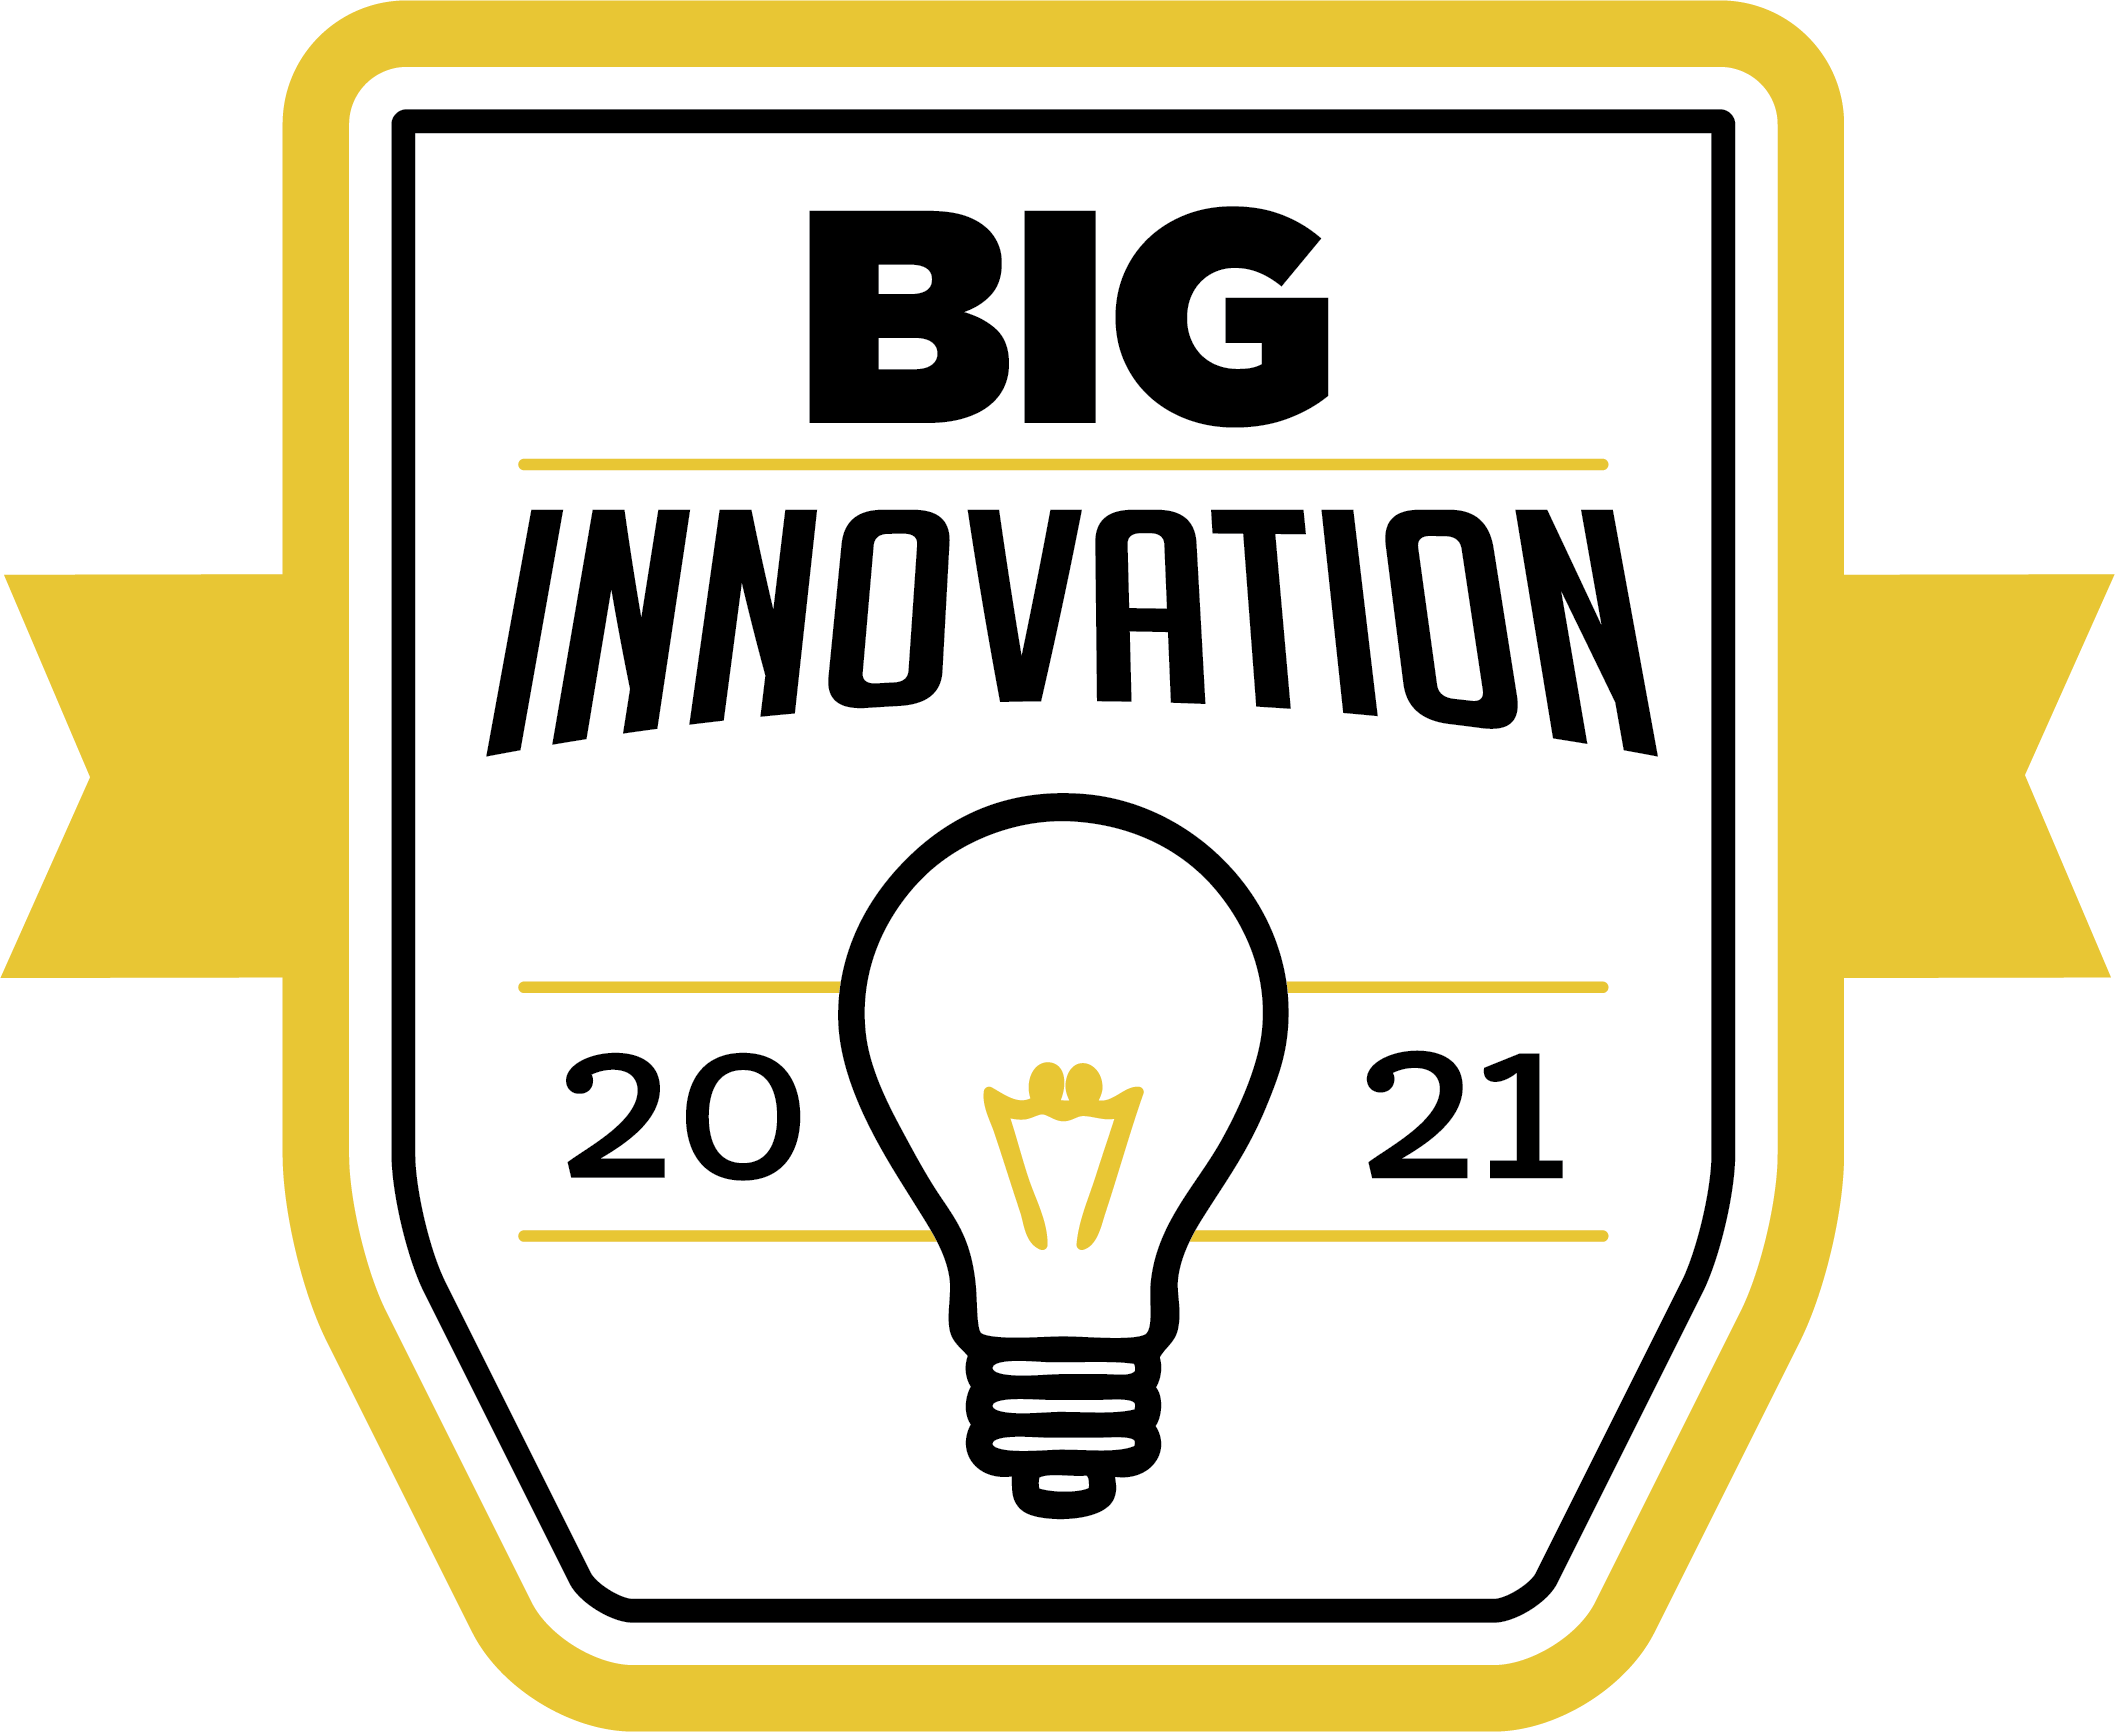 2021 BIG Innovation Award